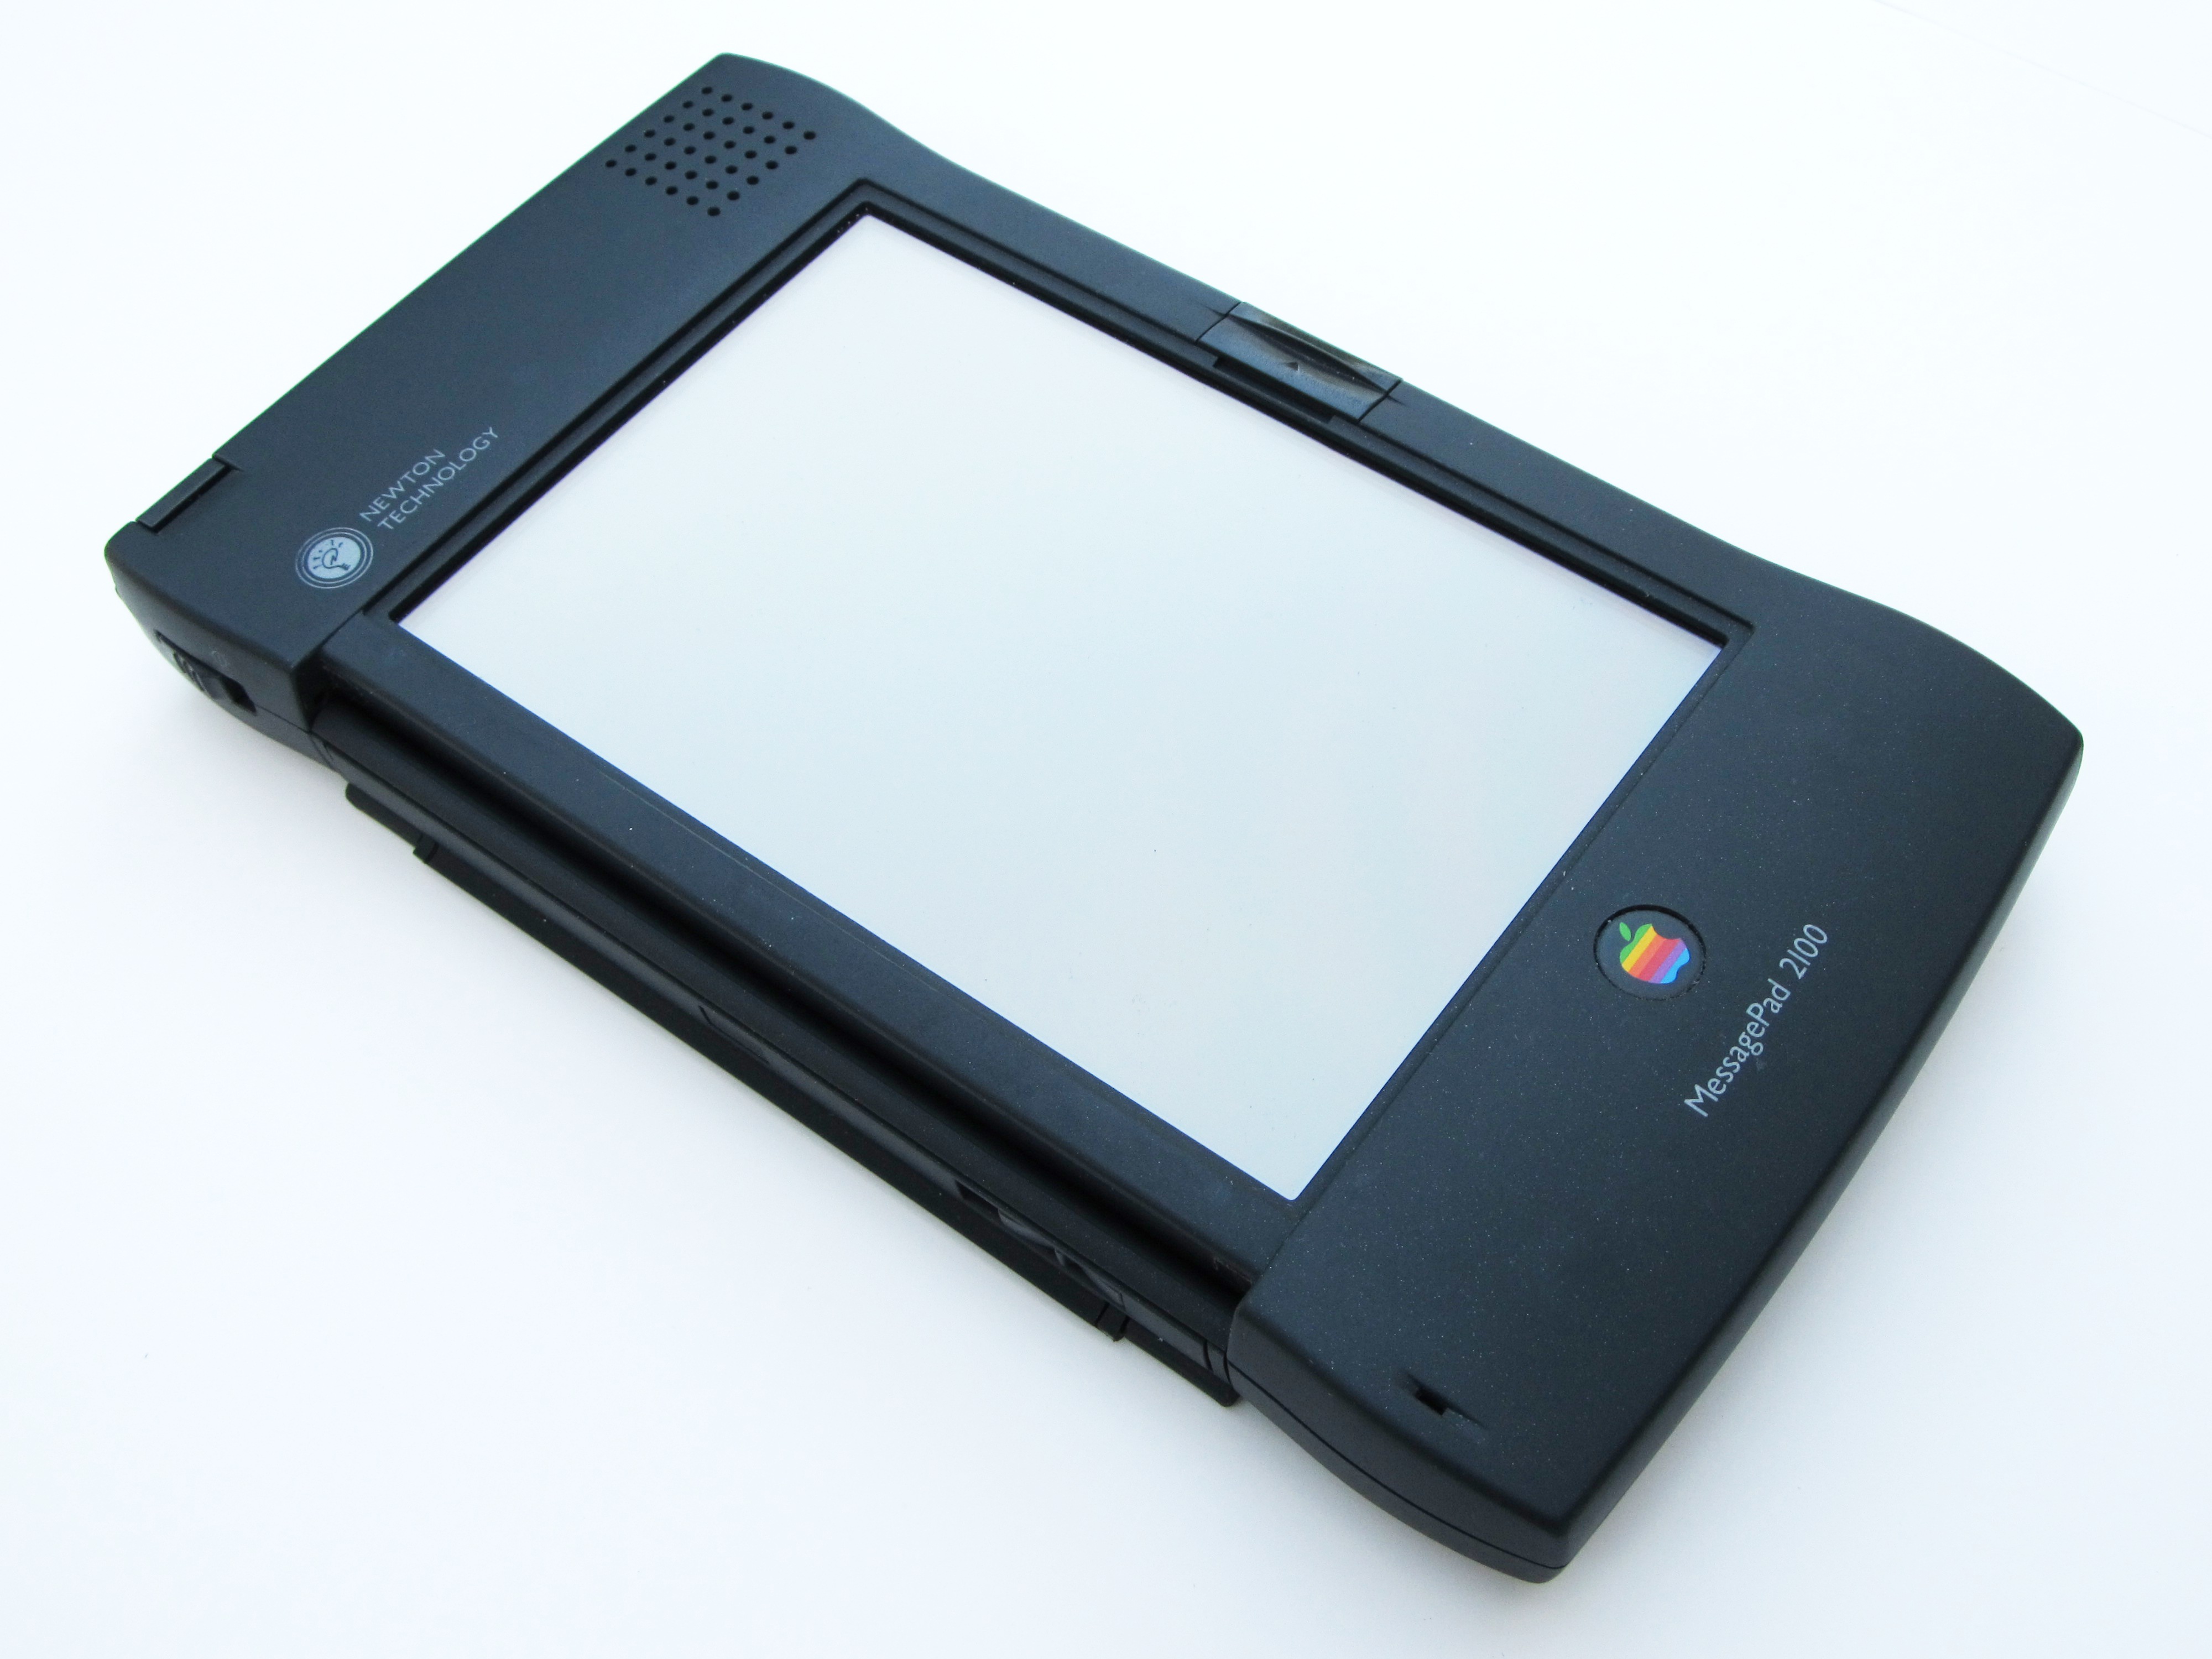 Međutim, da budemo sasvim točni, iPad nije prvo Appleovo tablet računalo. Prvi je bio njihov model Newton, predstavljen 1993. godine. Newton je imao niz naprednih funkcija, poput prepoznavanja rukopisa.